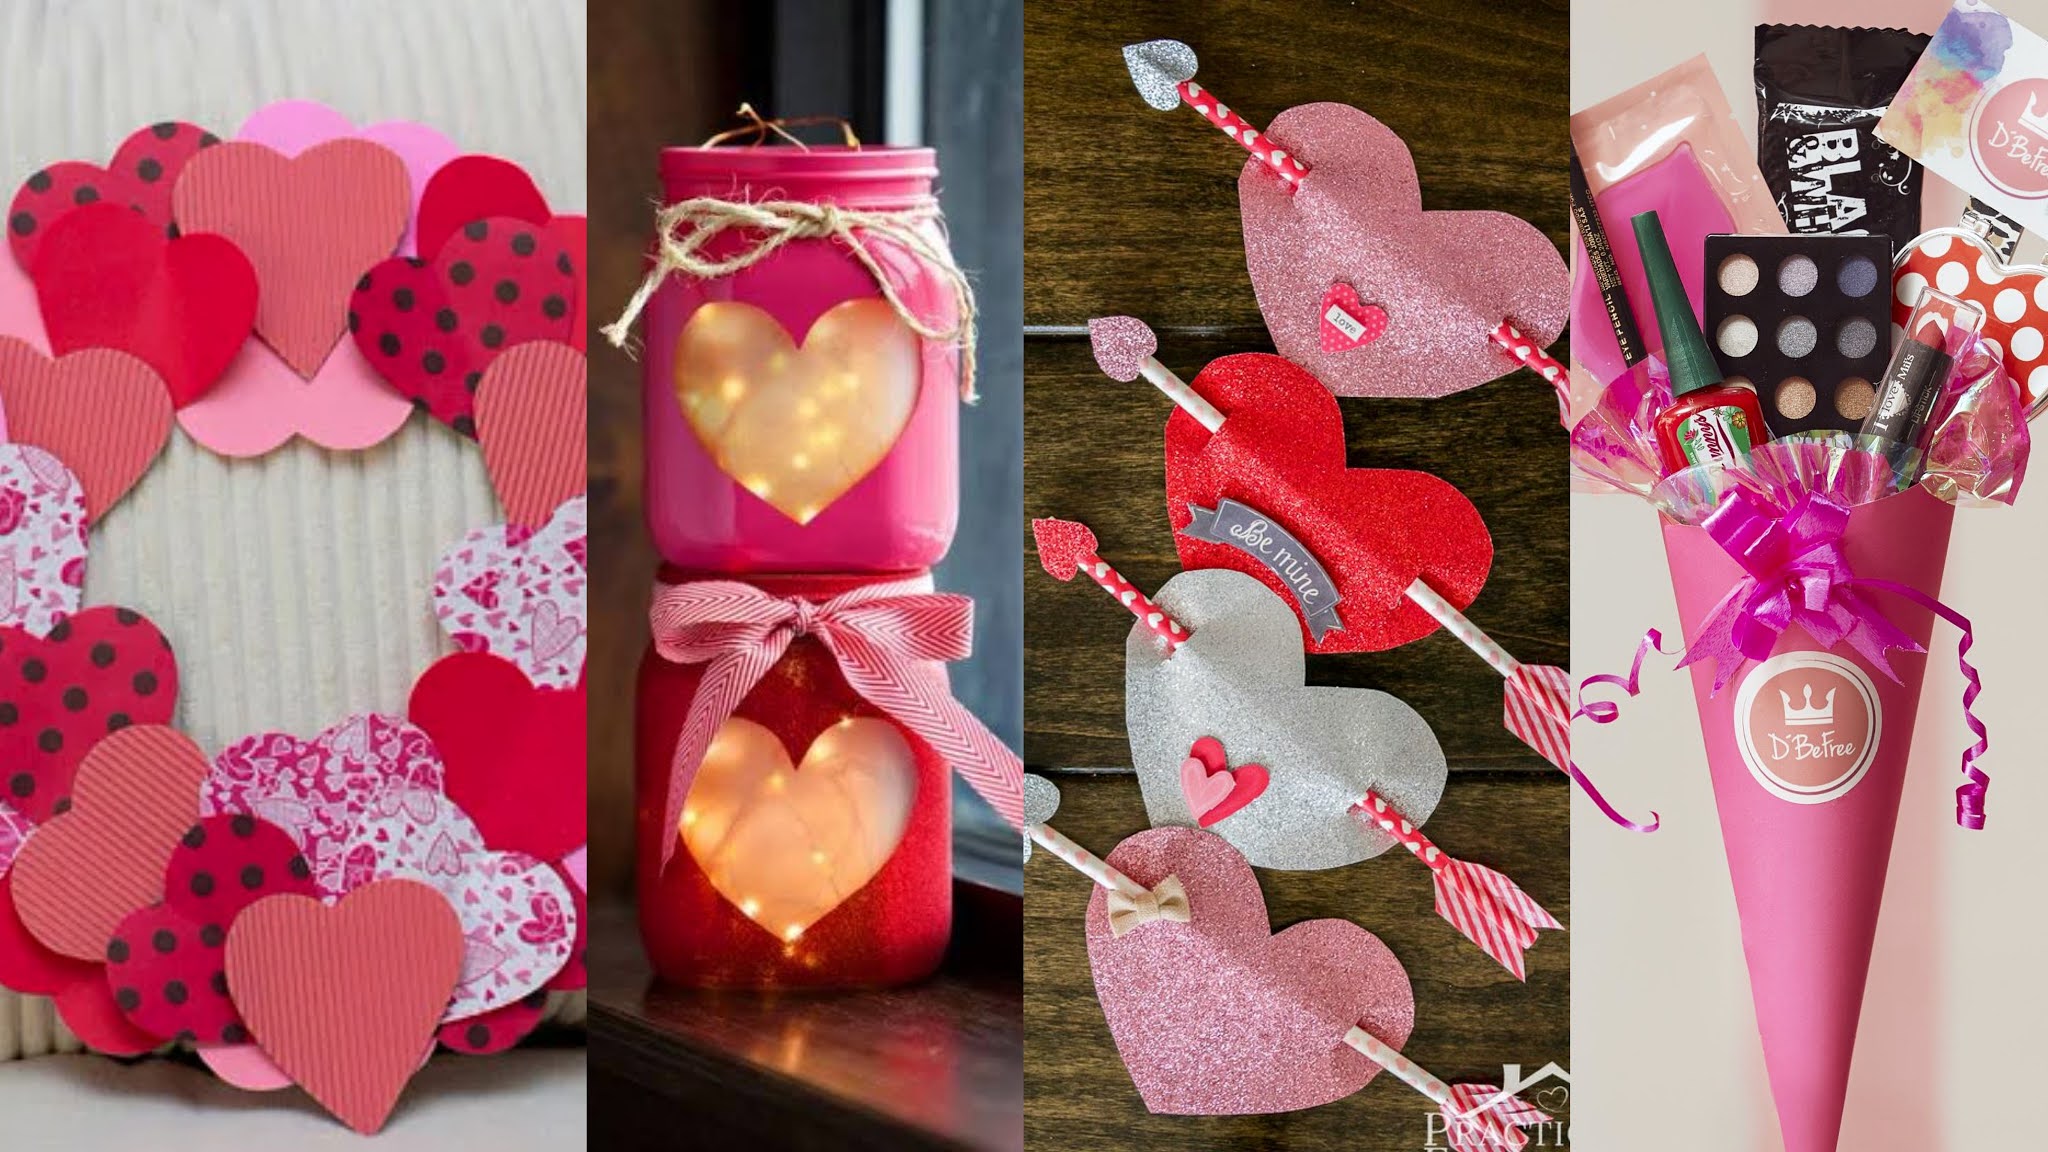 Ronycreativa blog de manualidades: 30 ideas para San Valentín o Día del  Amor y la Amistad DIY